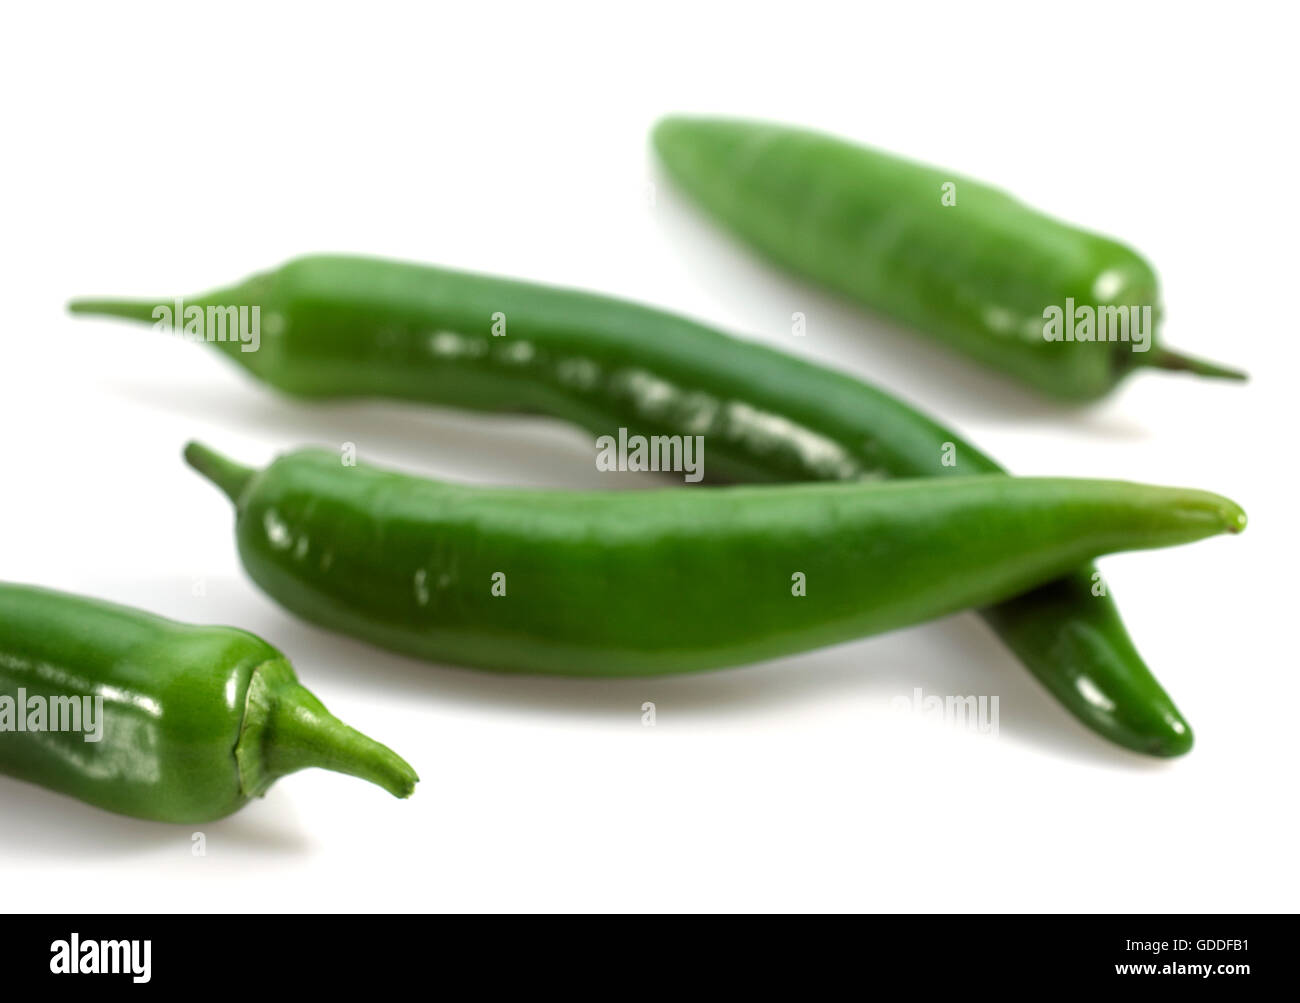 Green Chili Pepper, capsicum annuum Stock Photo